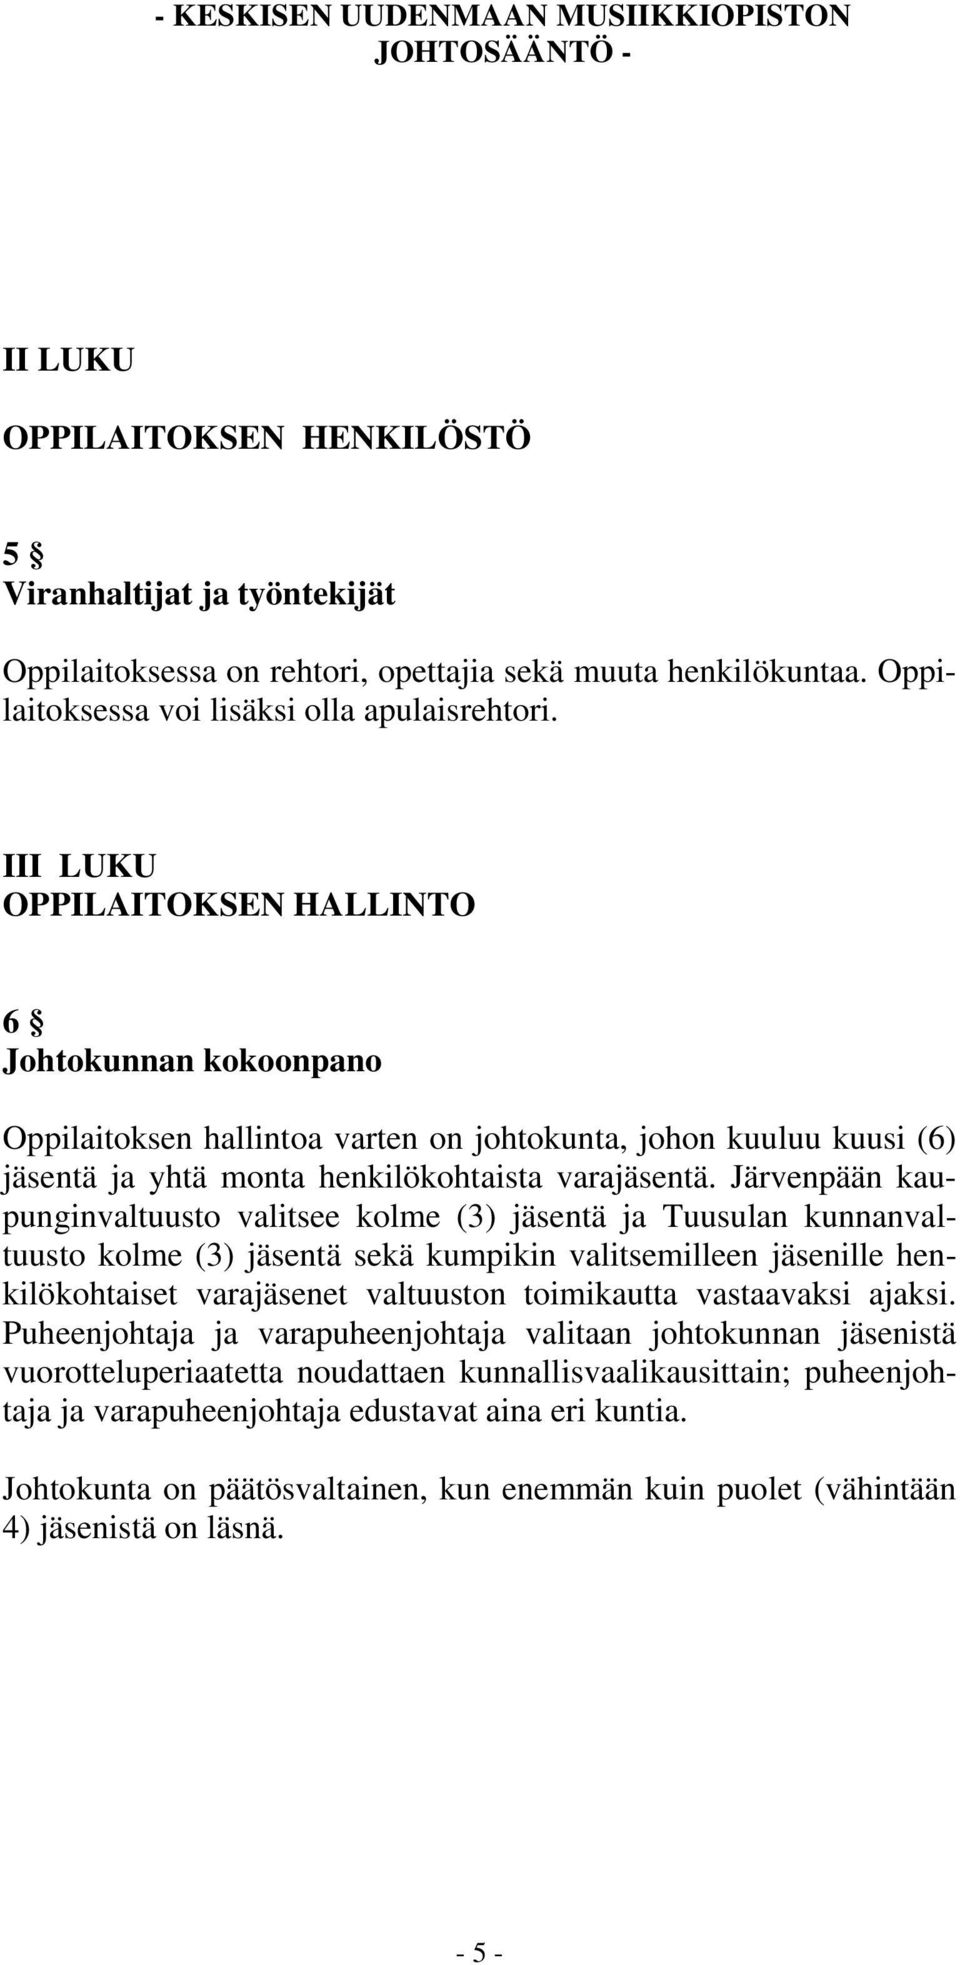 Järvenpään kaupunginvaltuusto valitsee kolme (3) jäsentä ja Tuusulan kunnanvaltuusto kolme (3) jäsentä sekä kumpikin valitsemilleen jäsenille henkilökohtaiset varajäsenet valtuuston toimikautta